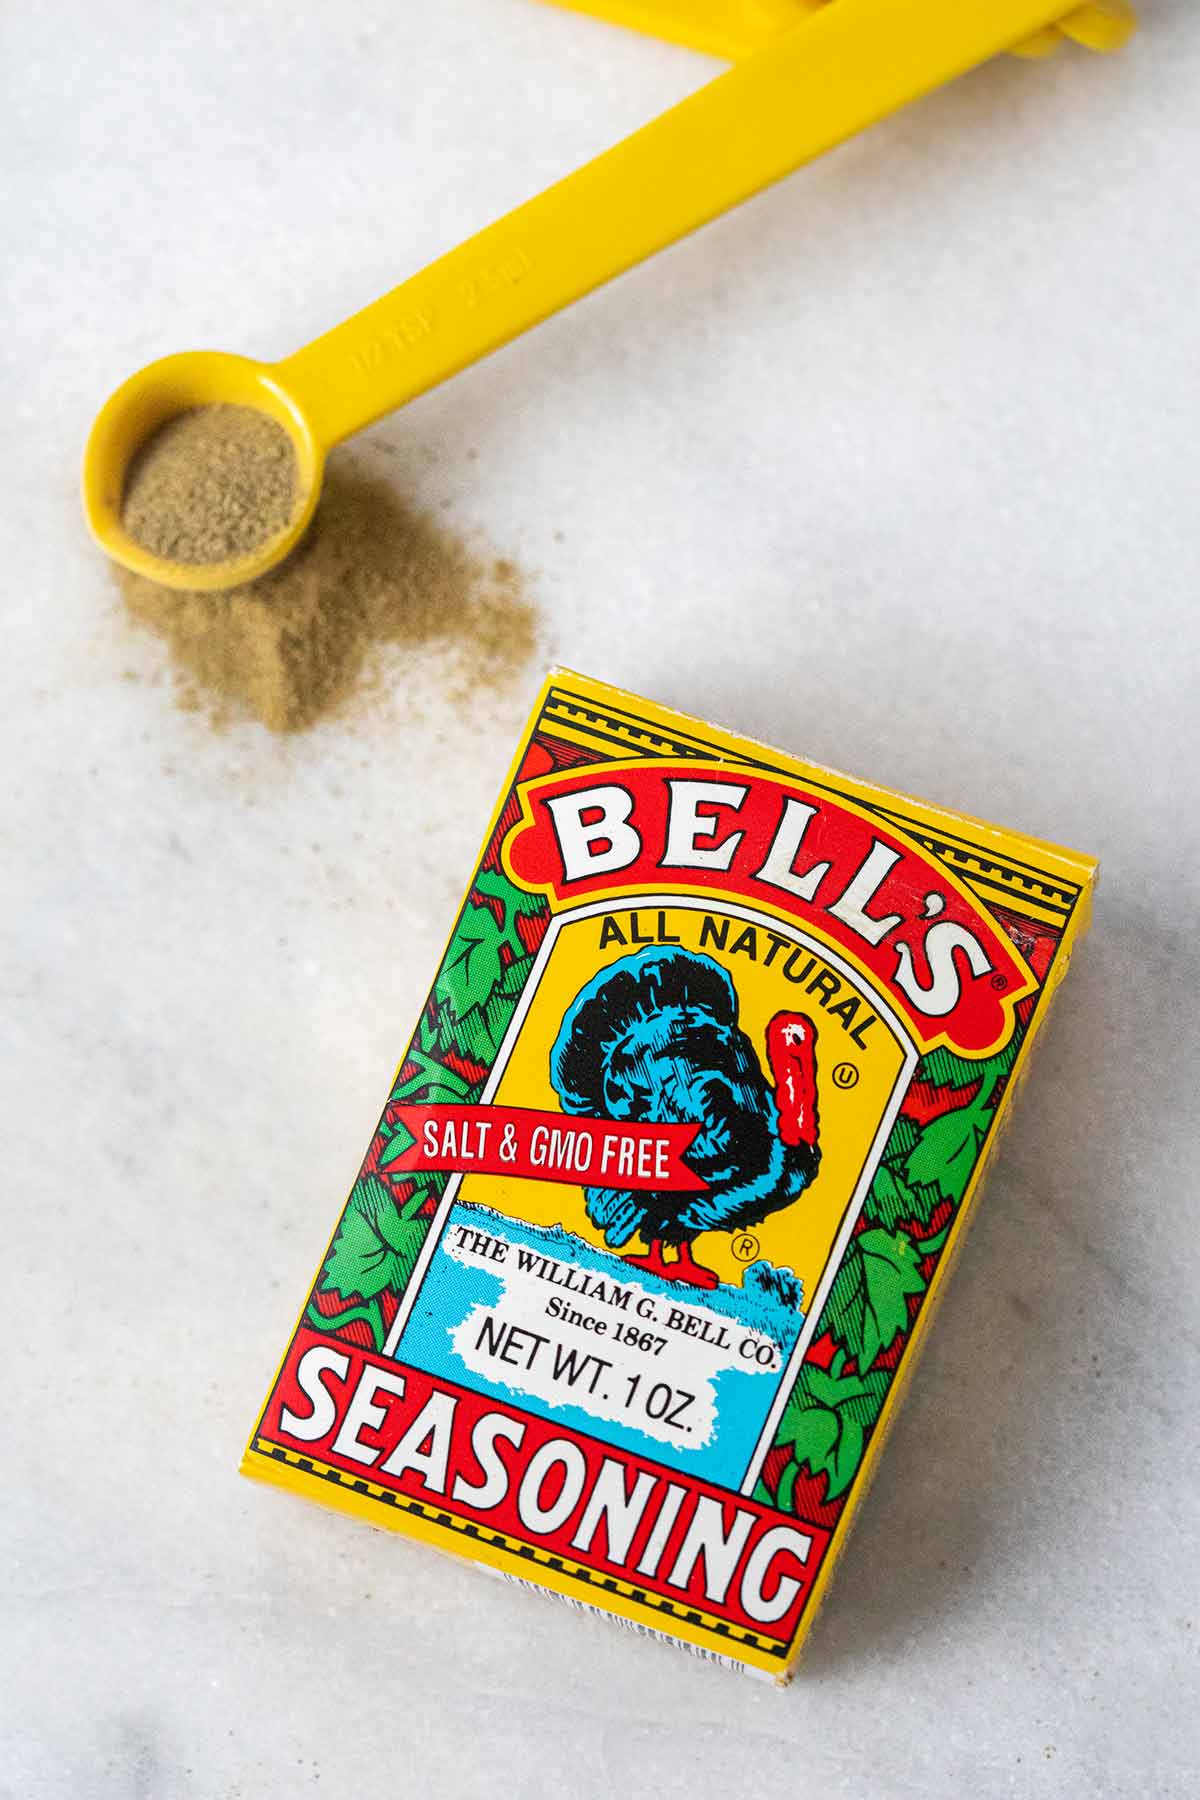 What is Bell's Seasoning?